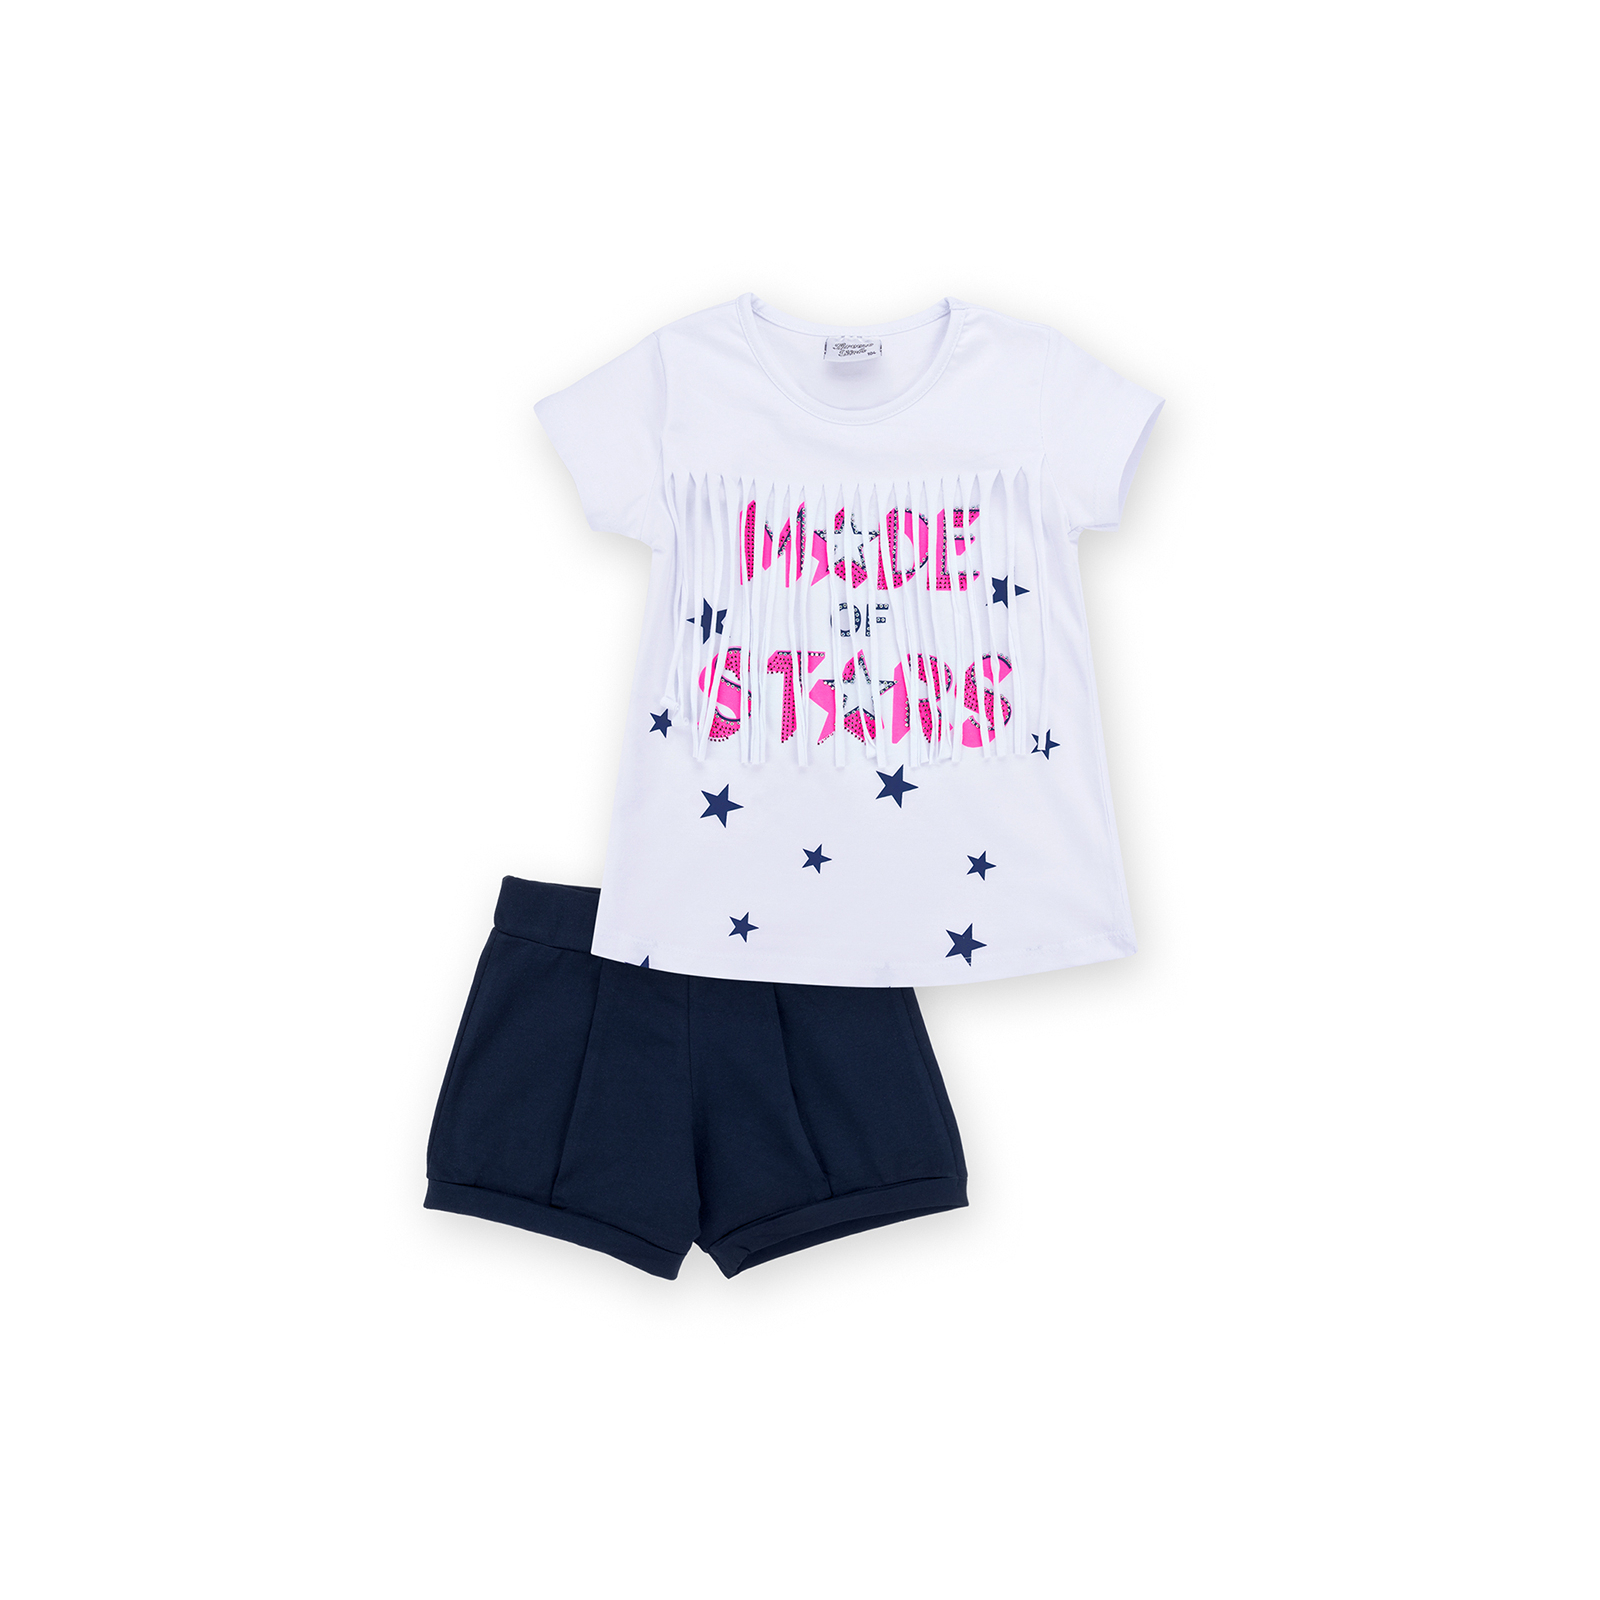 Набор детской одежды Breeze футболка со звездочками с шортами (9036-110G-pink)